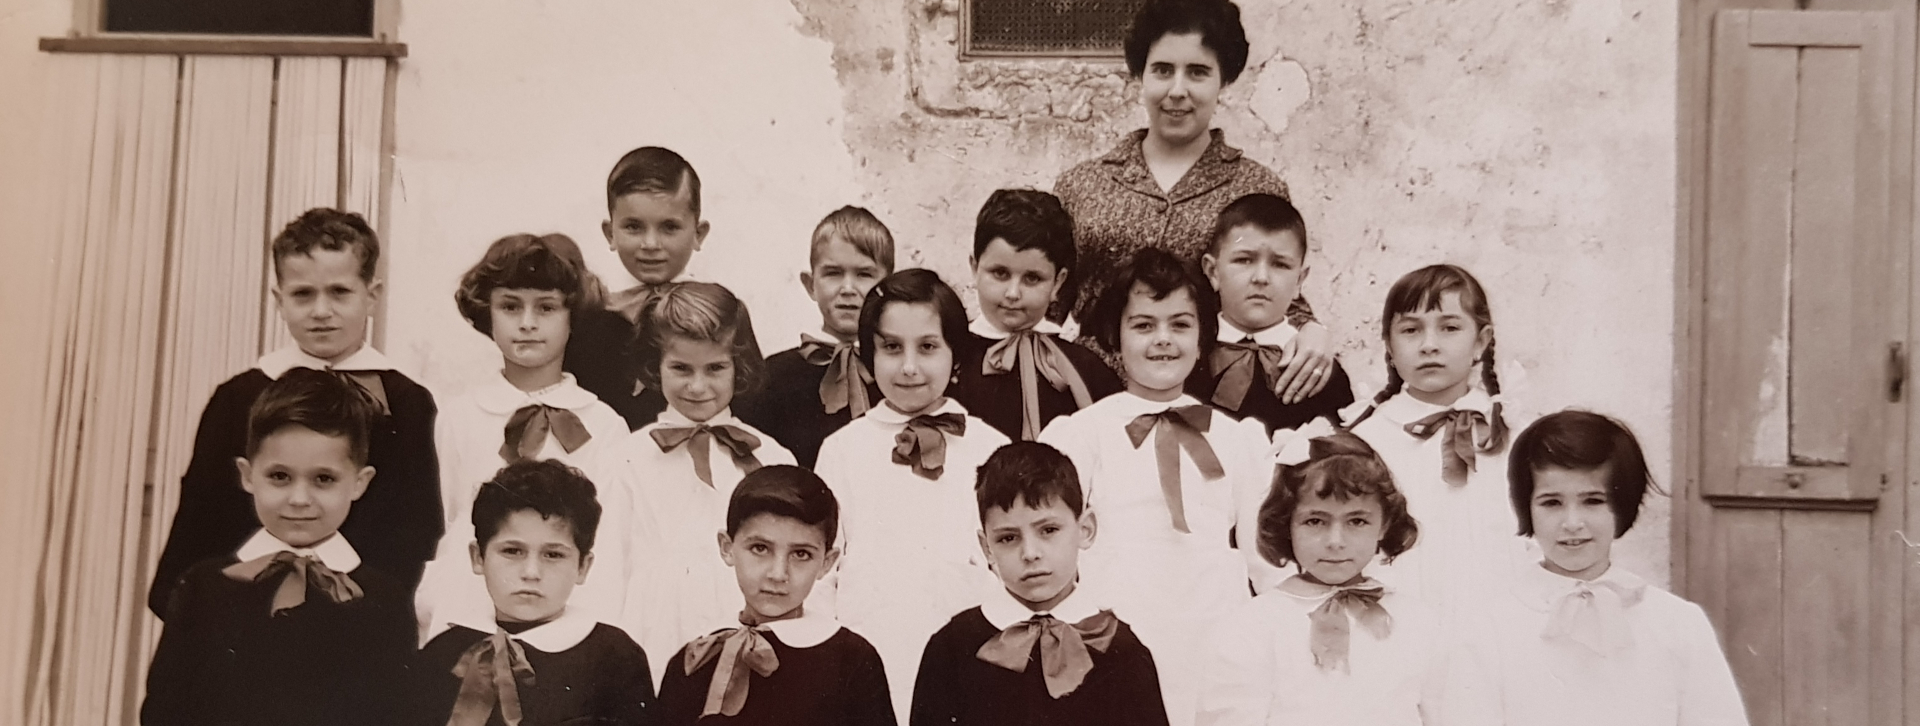 Immagine gruppo scolastico 1962 